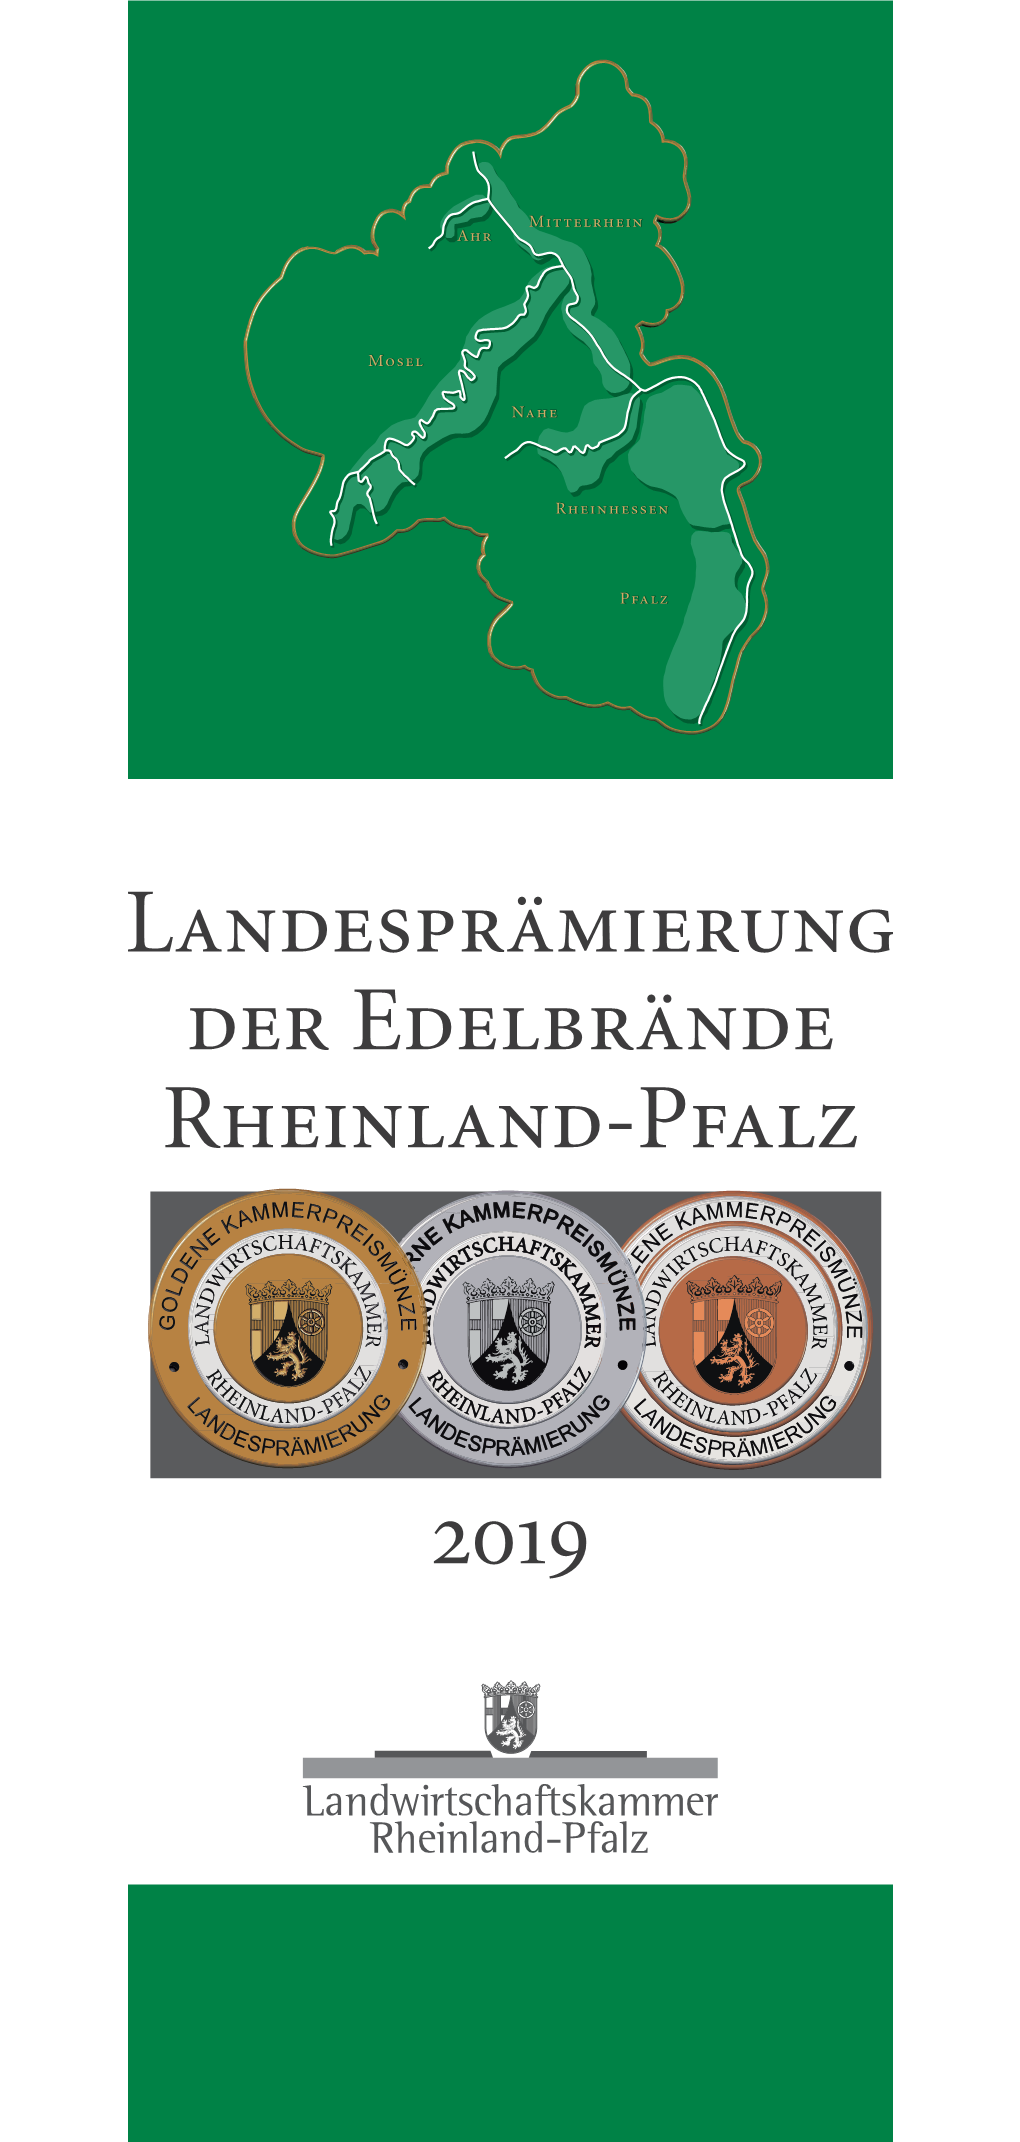 Landesprämierung Der Edelbrände Rheinland-Pfalz 2019